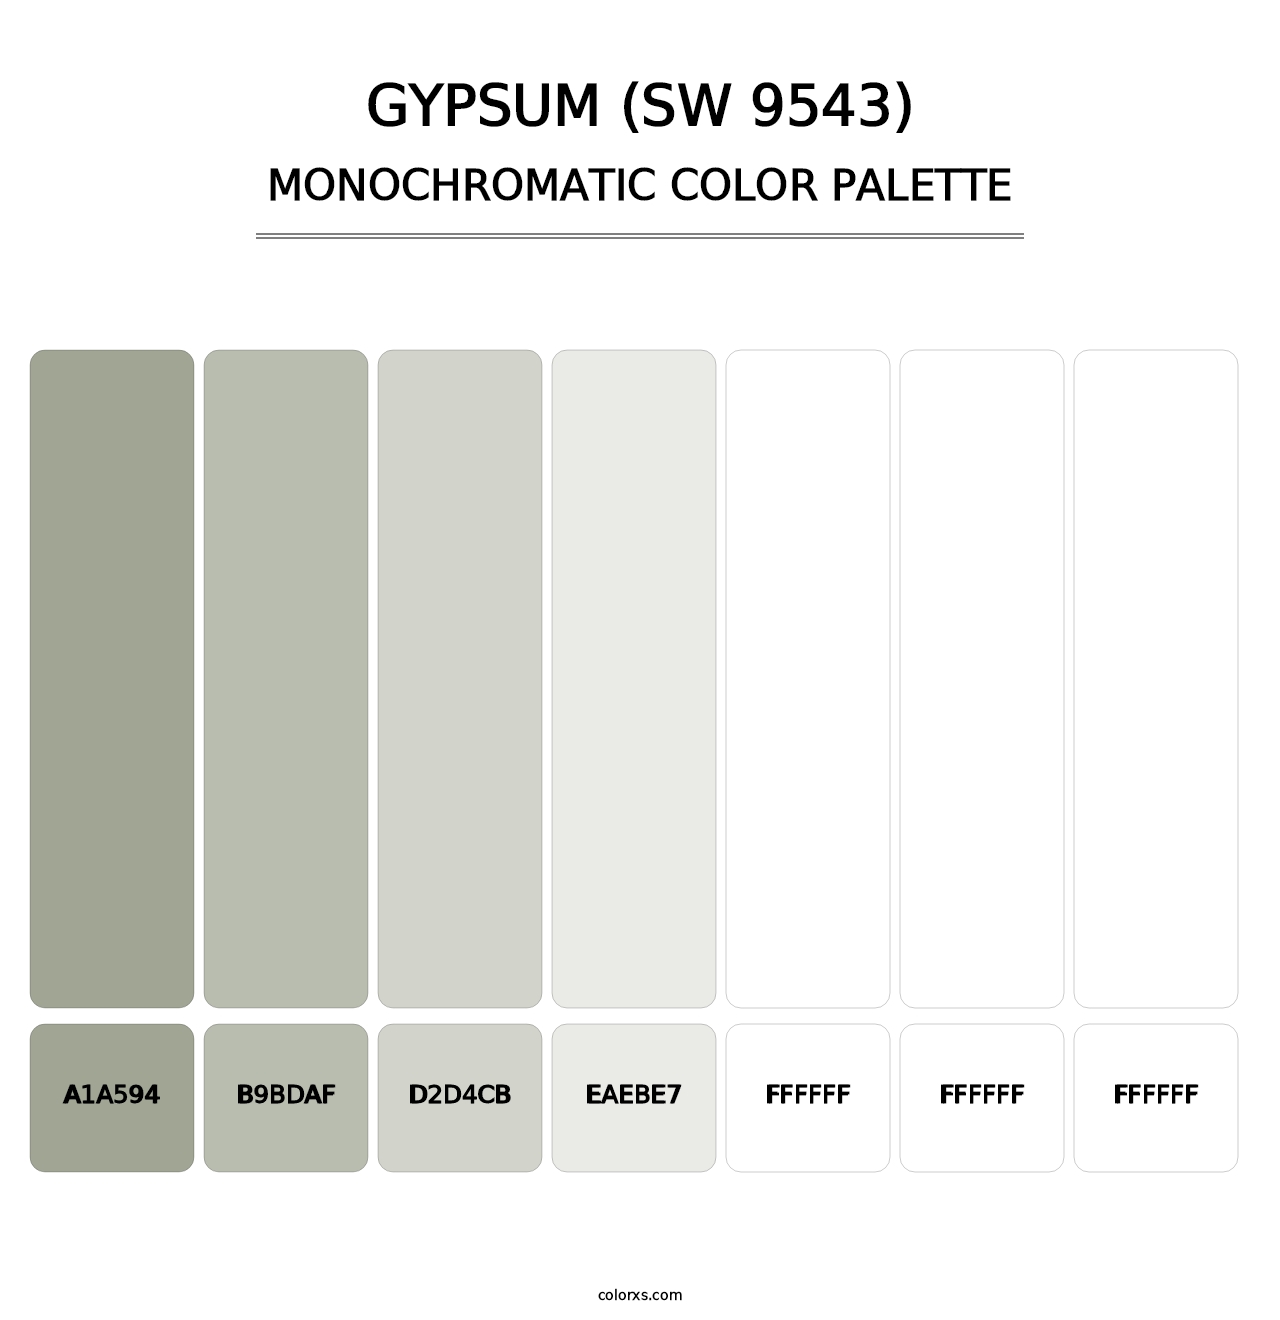 Gypsum (SW 9543) - Monochromatic Color Palette